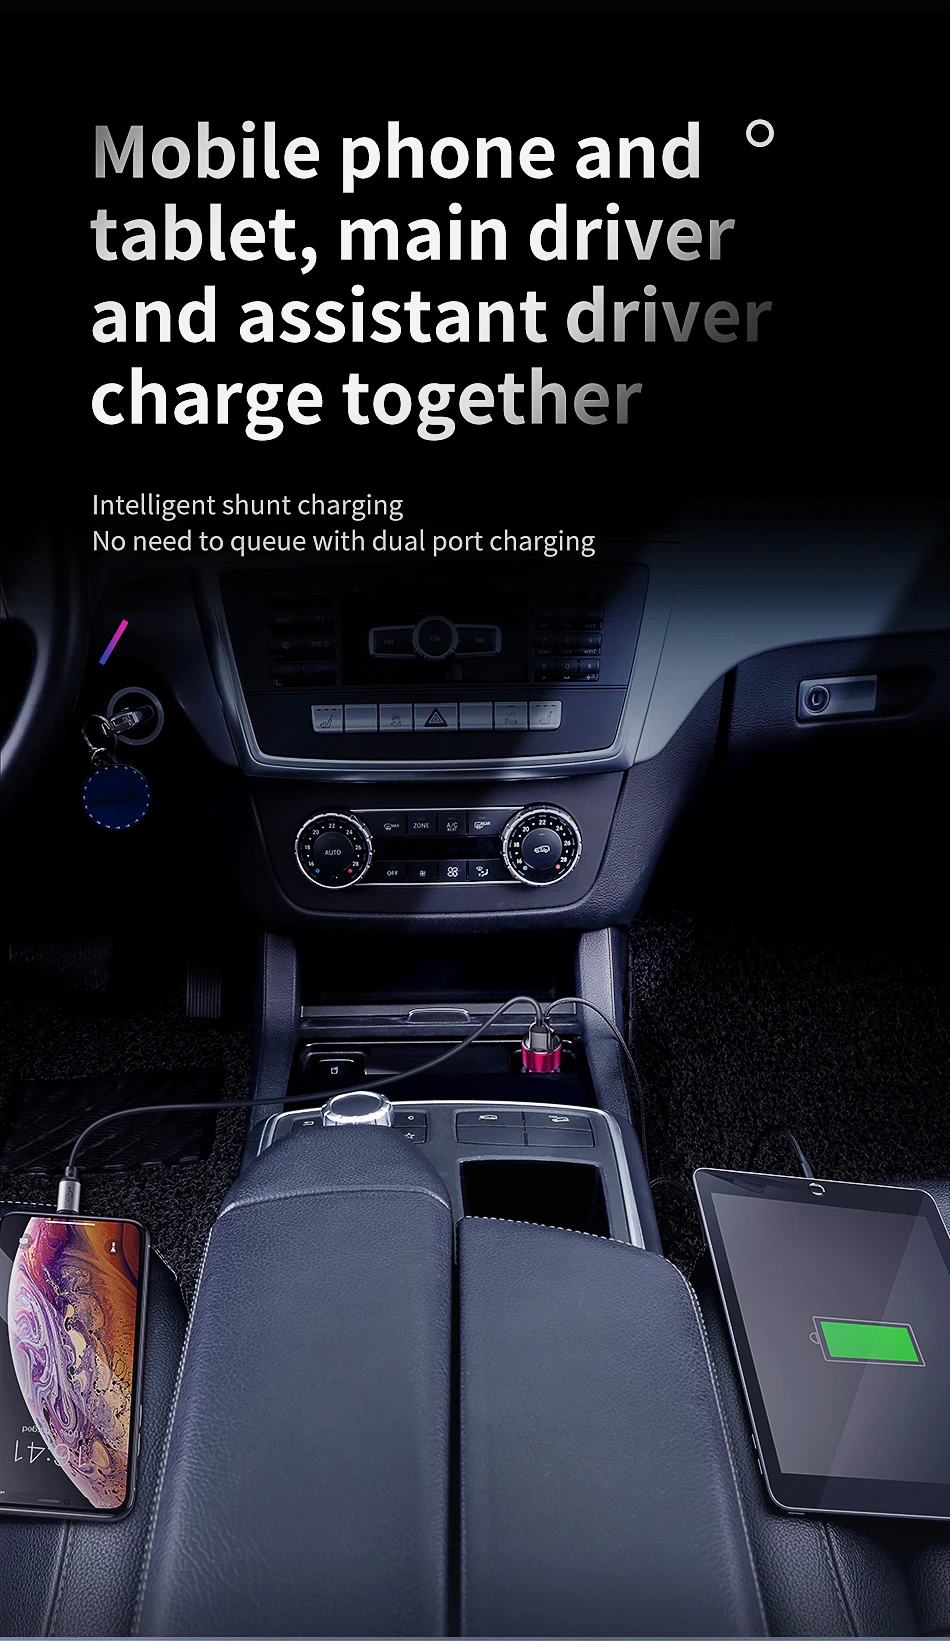 Baseus модернизированное автомобильное зарядное устройство 5 В 6A с двойным USB цифровым дисплеем для iPhone X, XR, Xs, 8, samsung, Xiaomi, быстрая зарядка, автомобильное зарядное устройство, адаптер